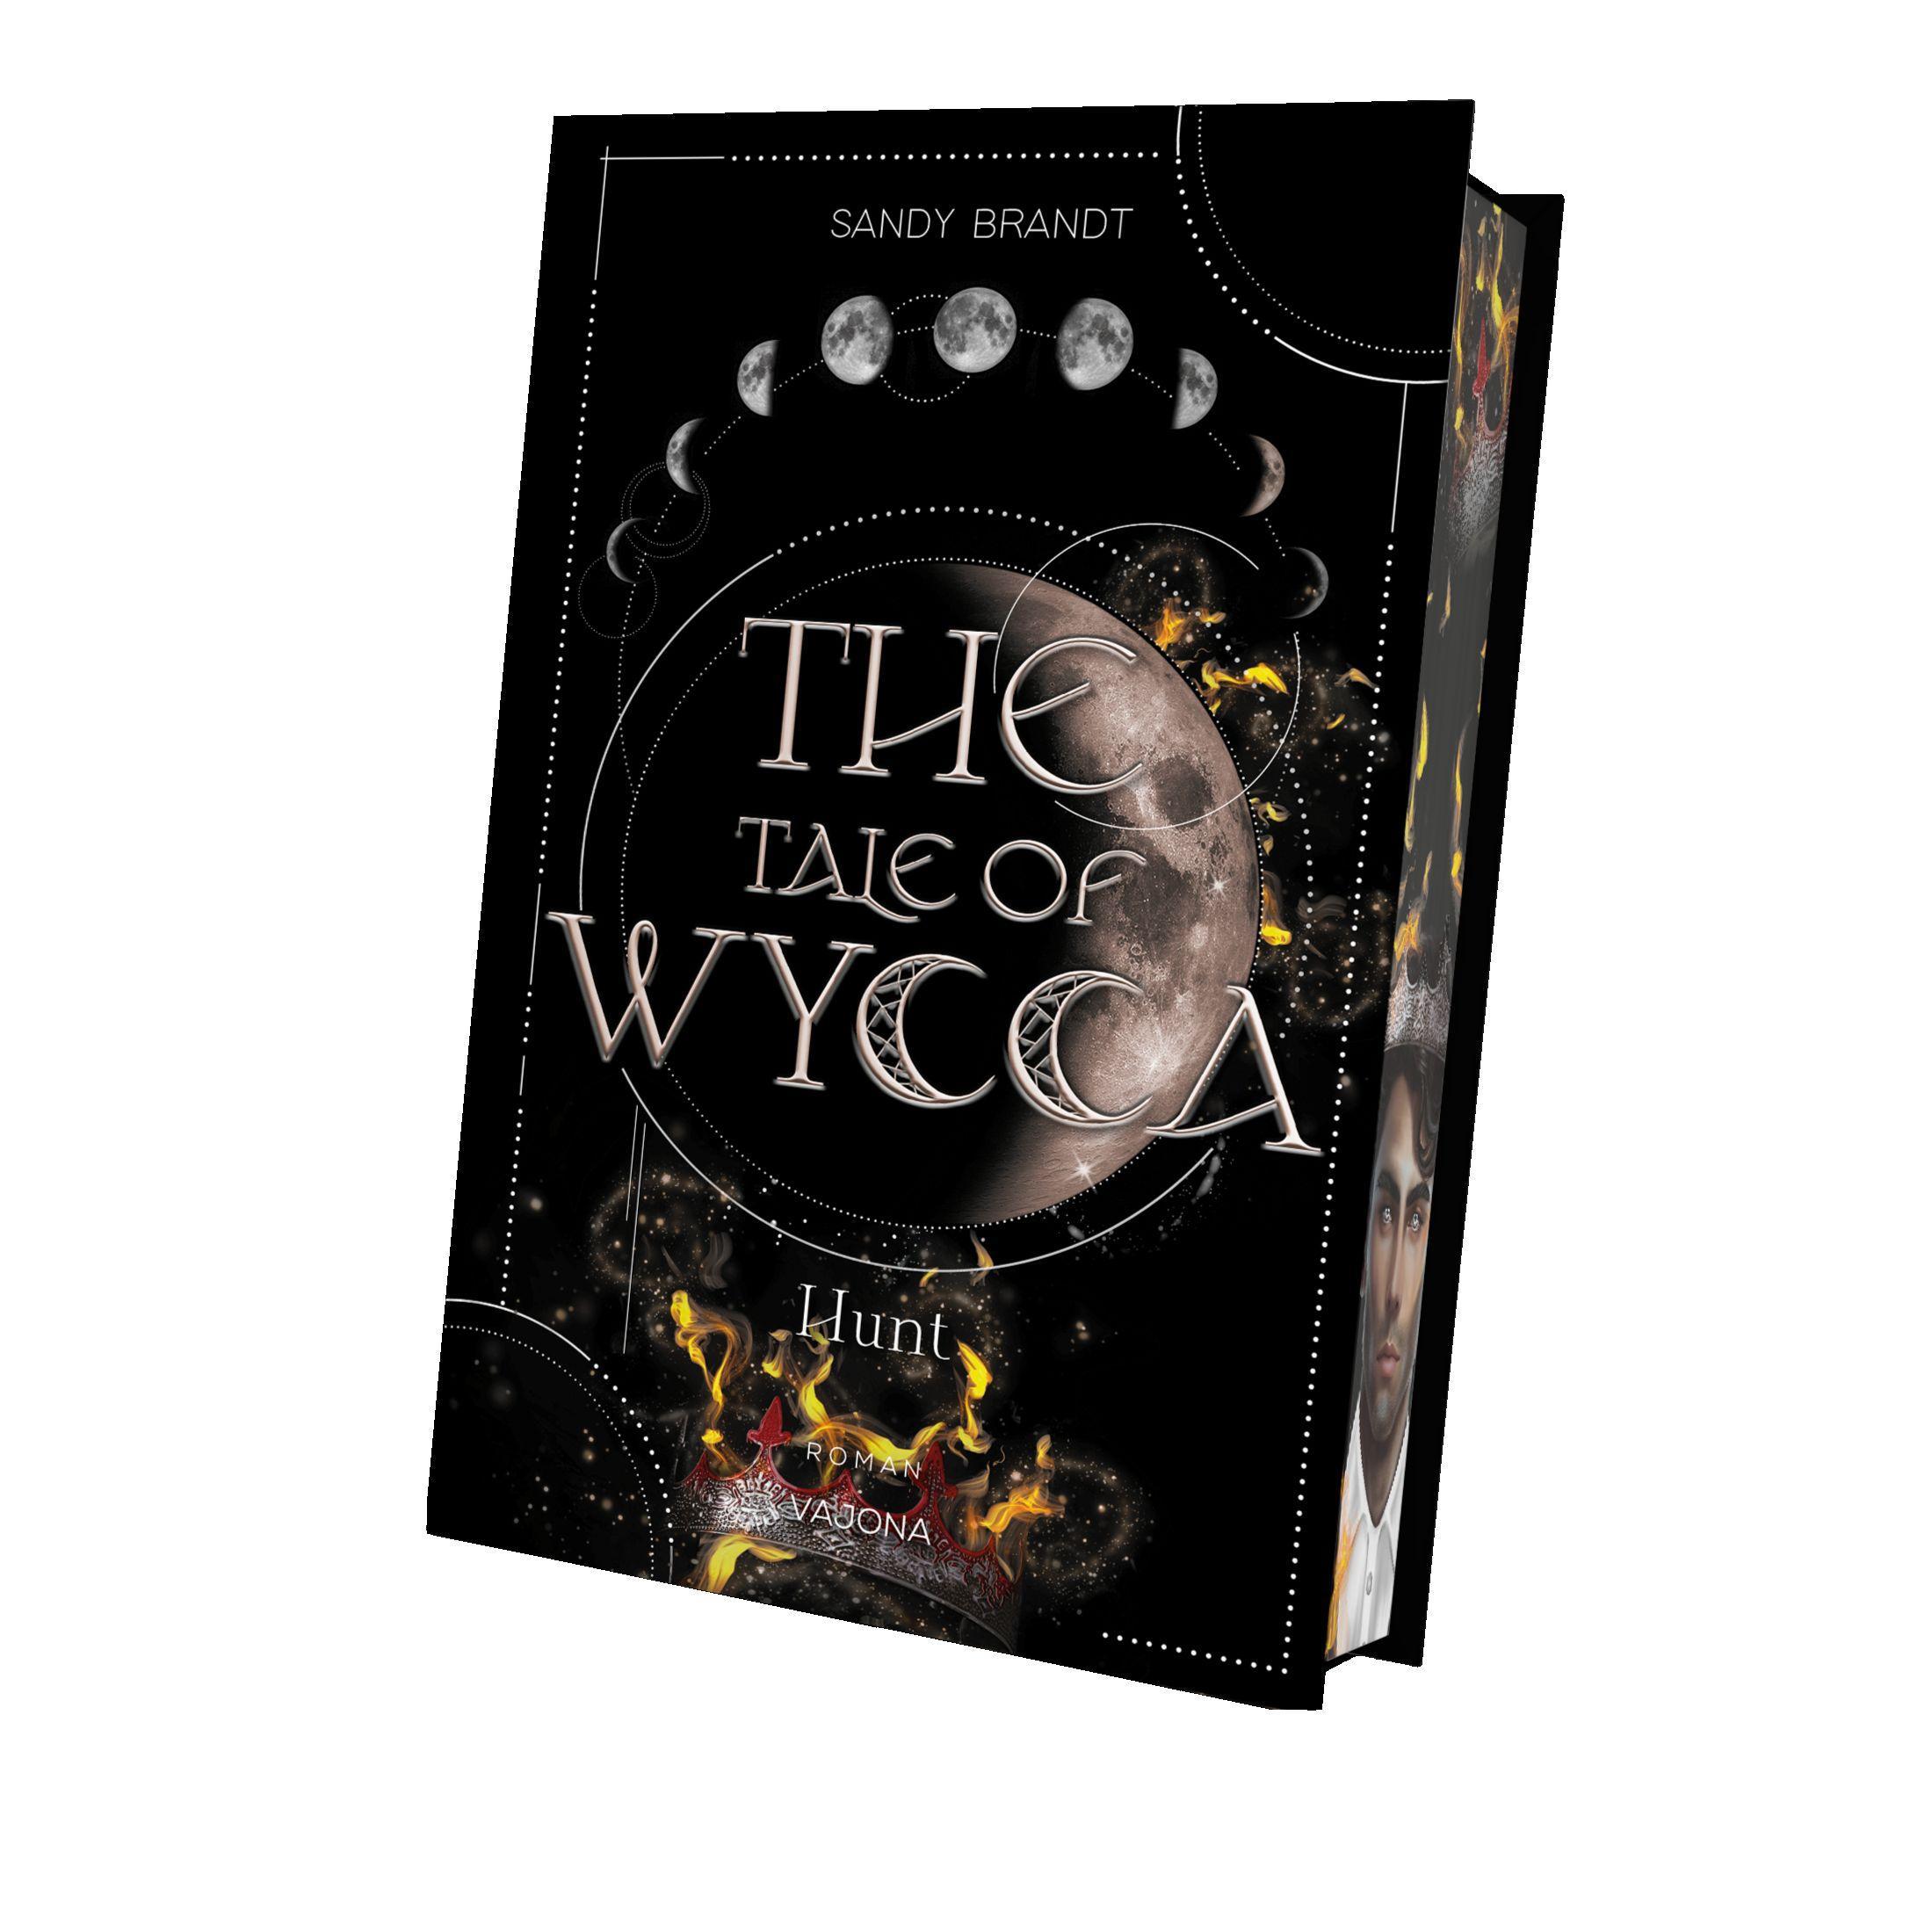 THE TALE OF WYCCA: Hunt (WYCCA-Reihe 2)